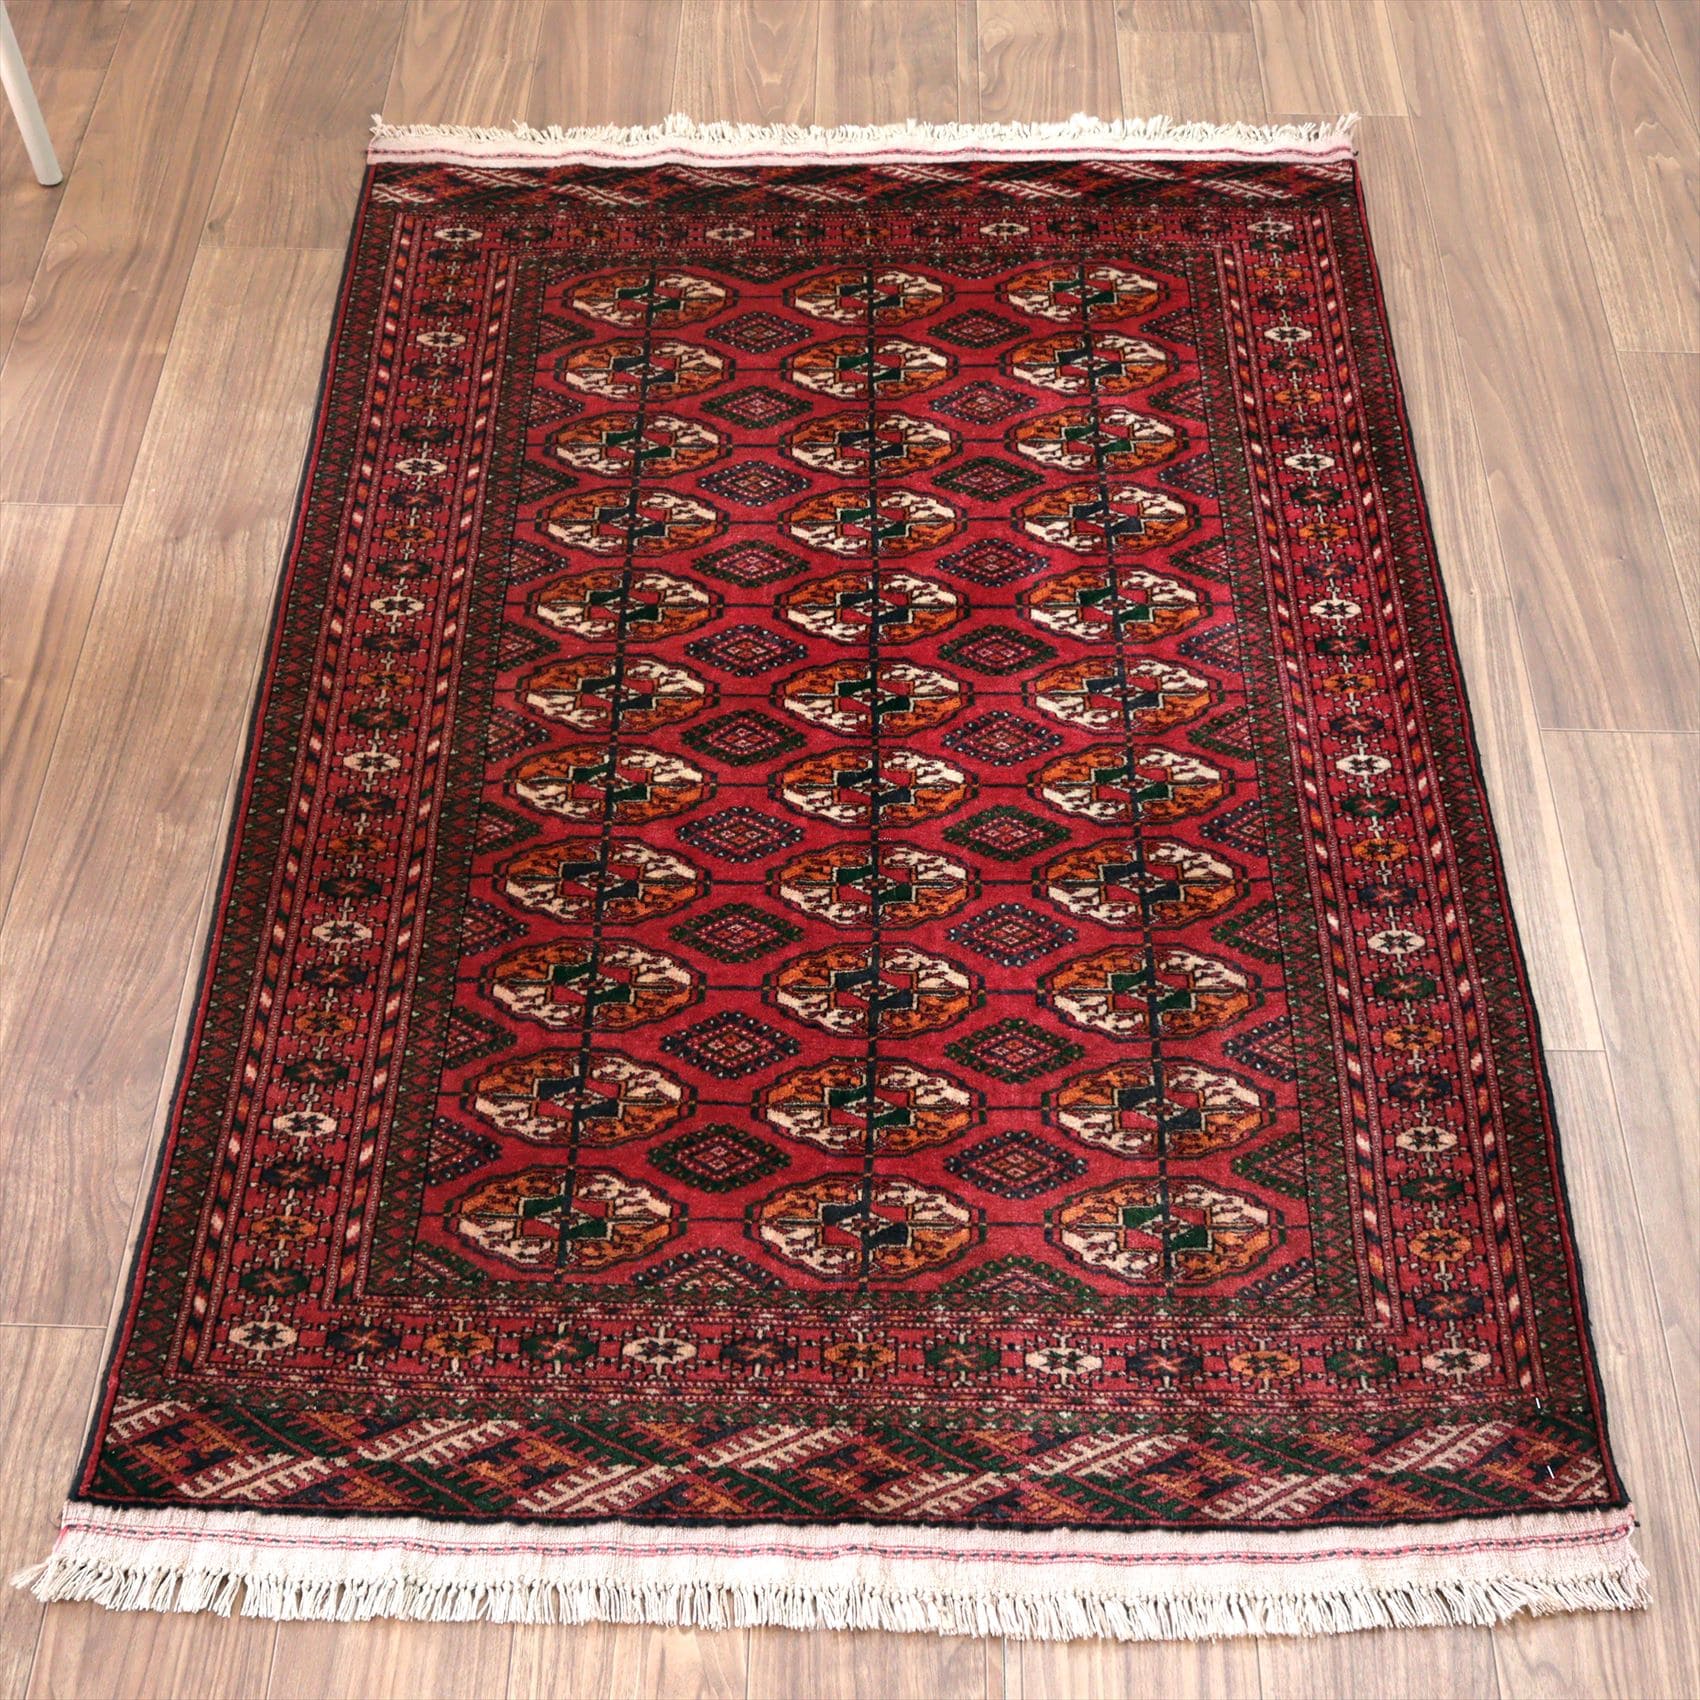 部族絨毯・トルクメン155×103cm 連なる赤いギュル文様